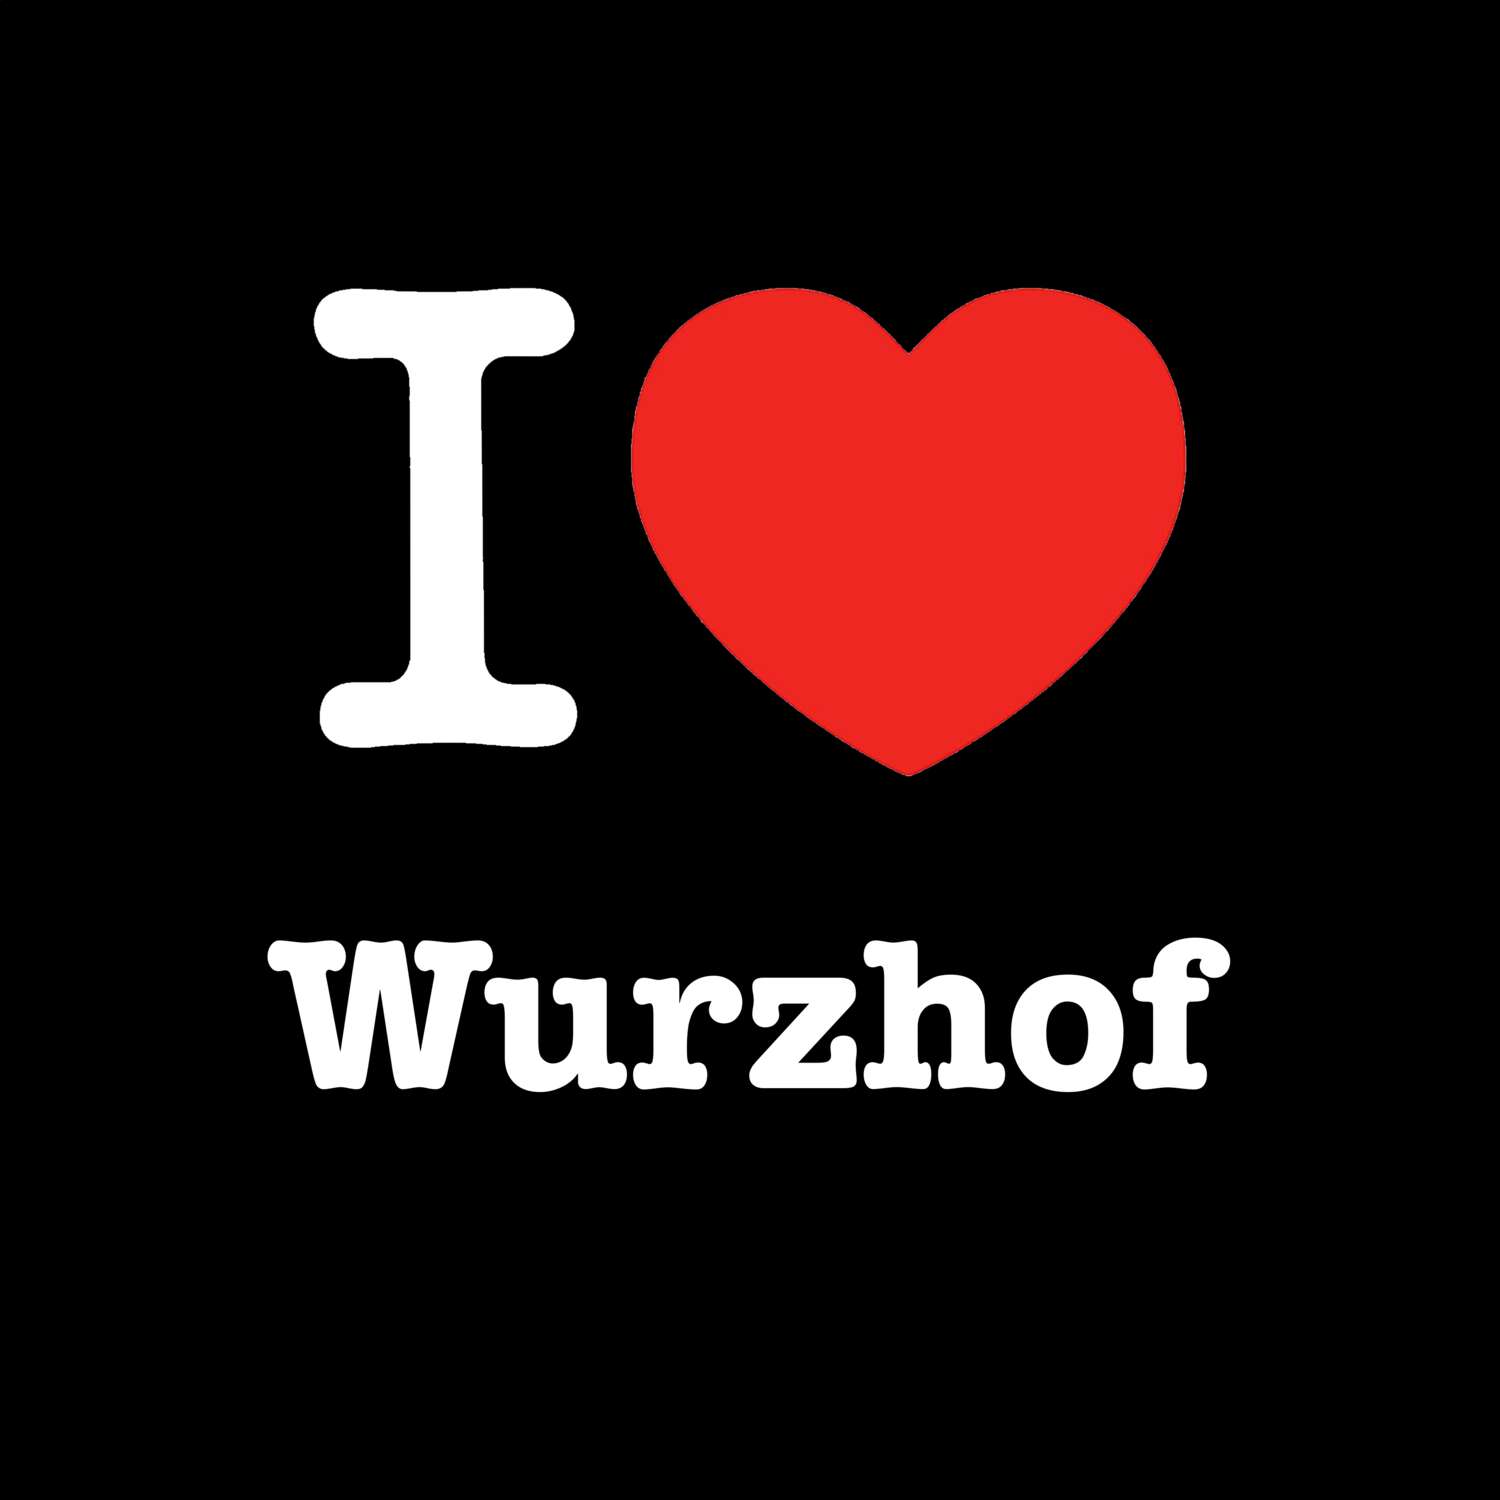 Wurzhof T-Shirt »I love«